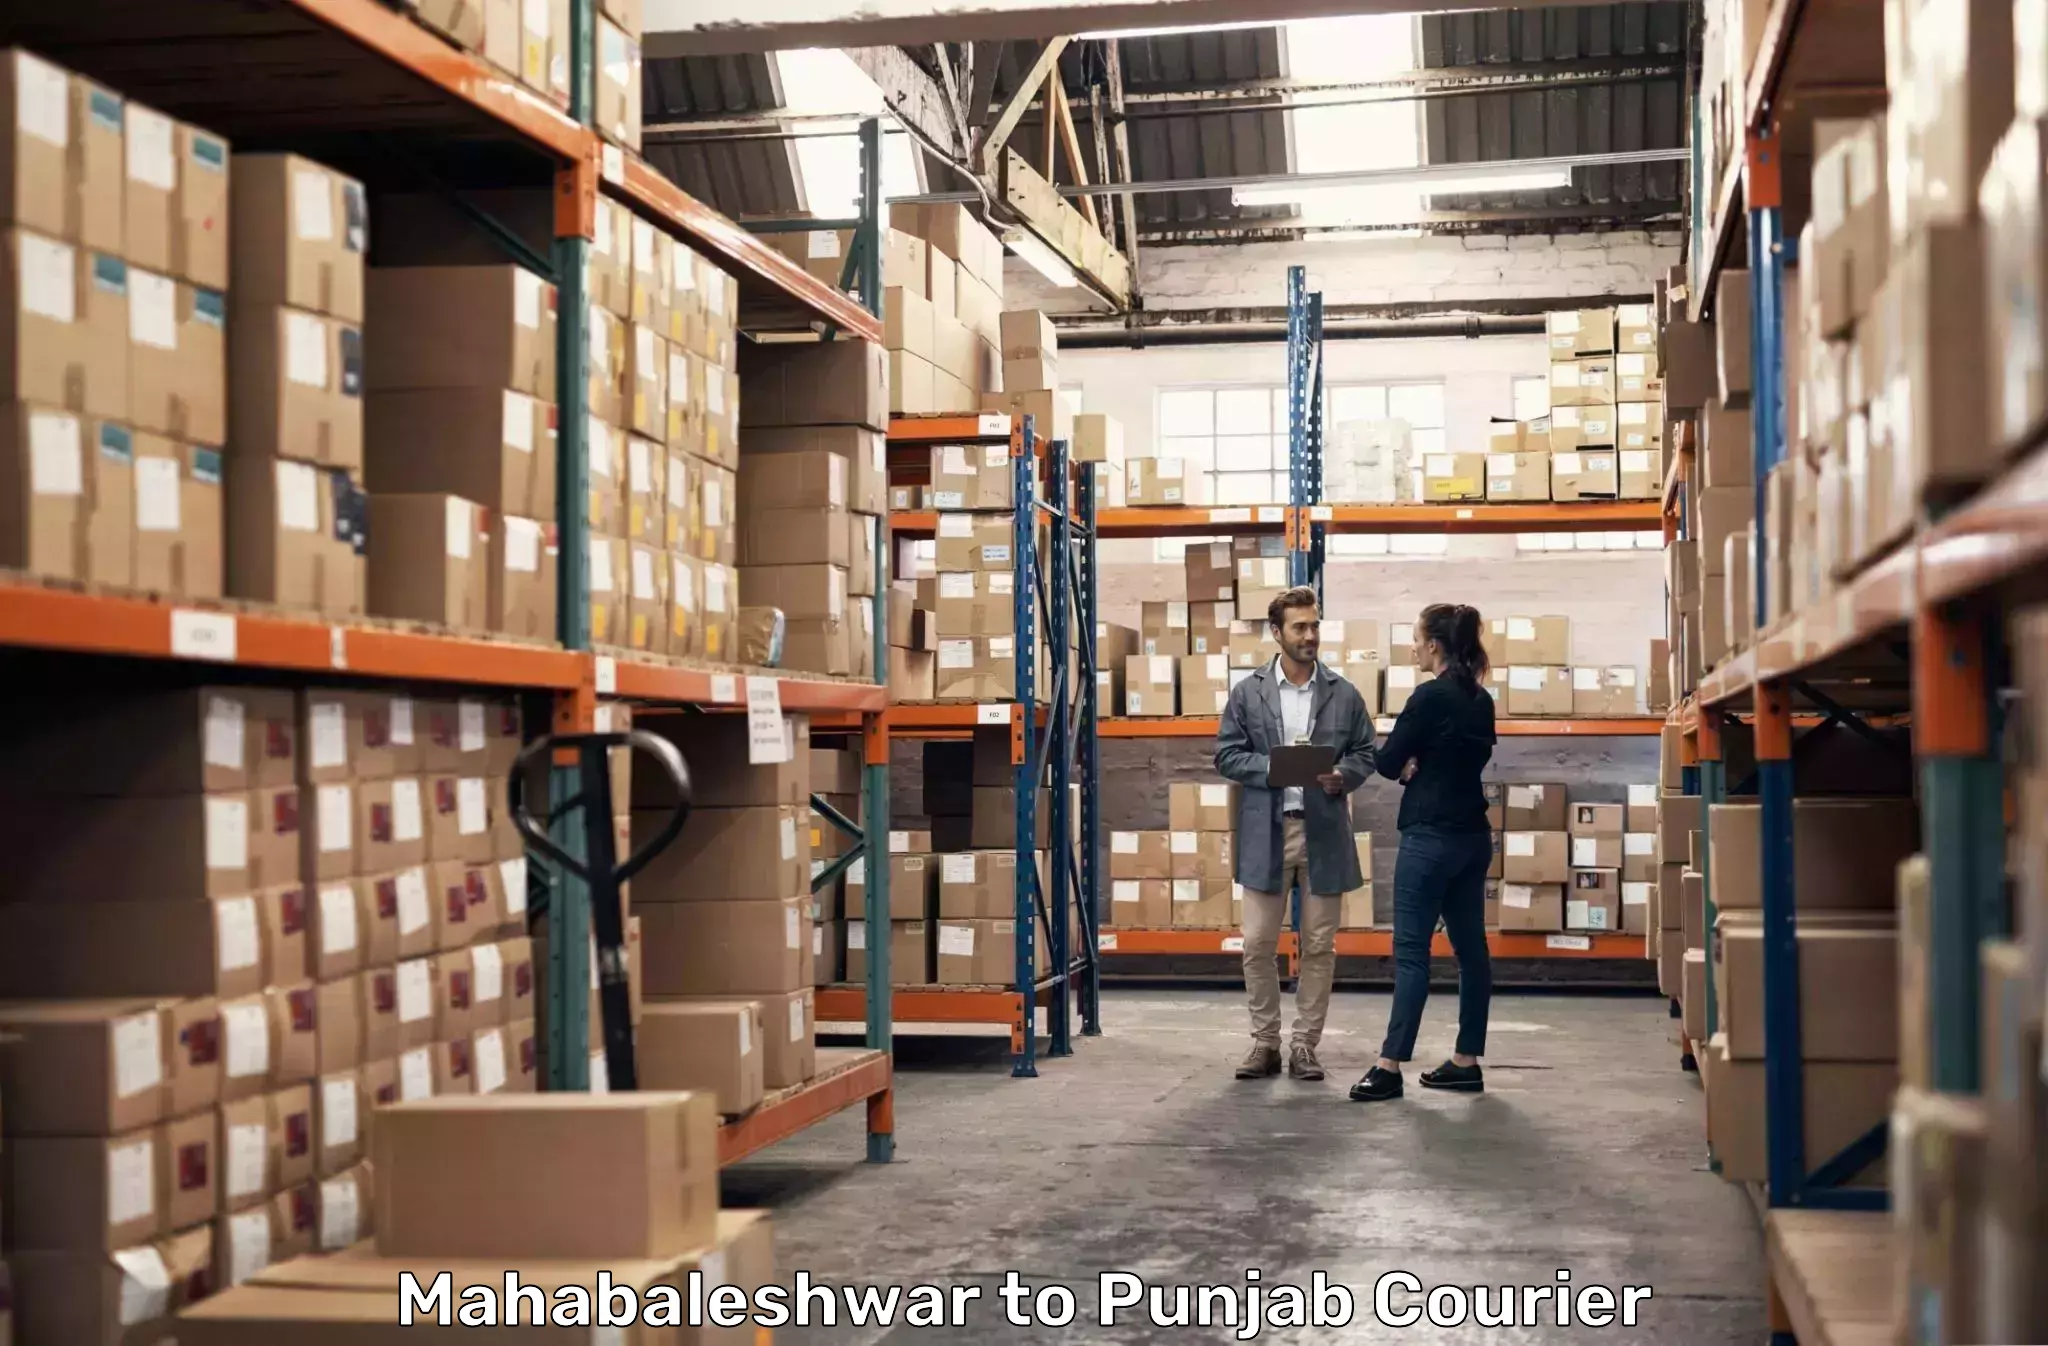 Cross-border shipping Mahabaleshwar to Fatehgarh Sahib